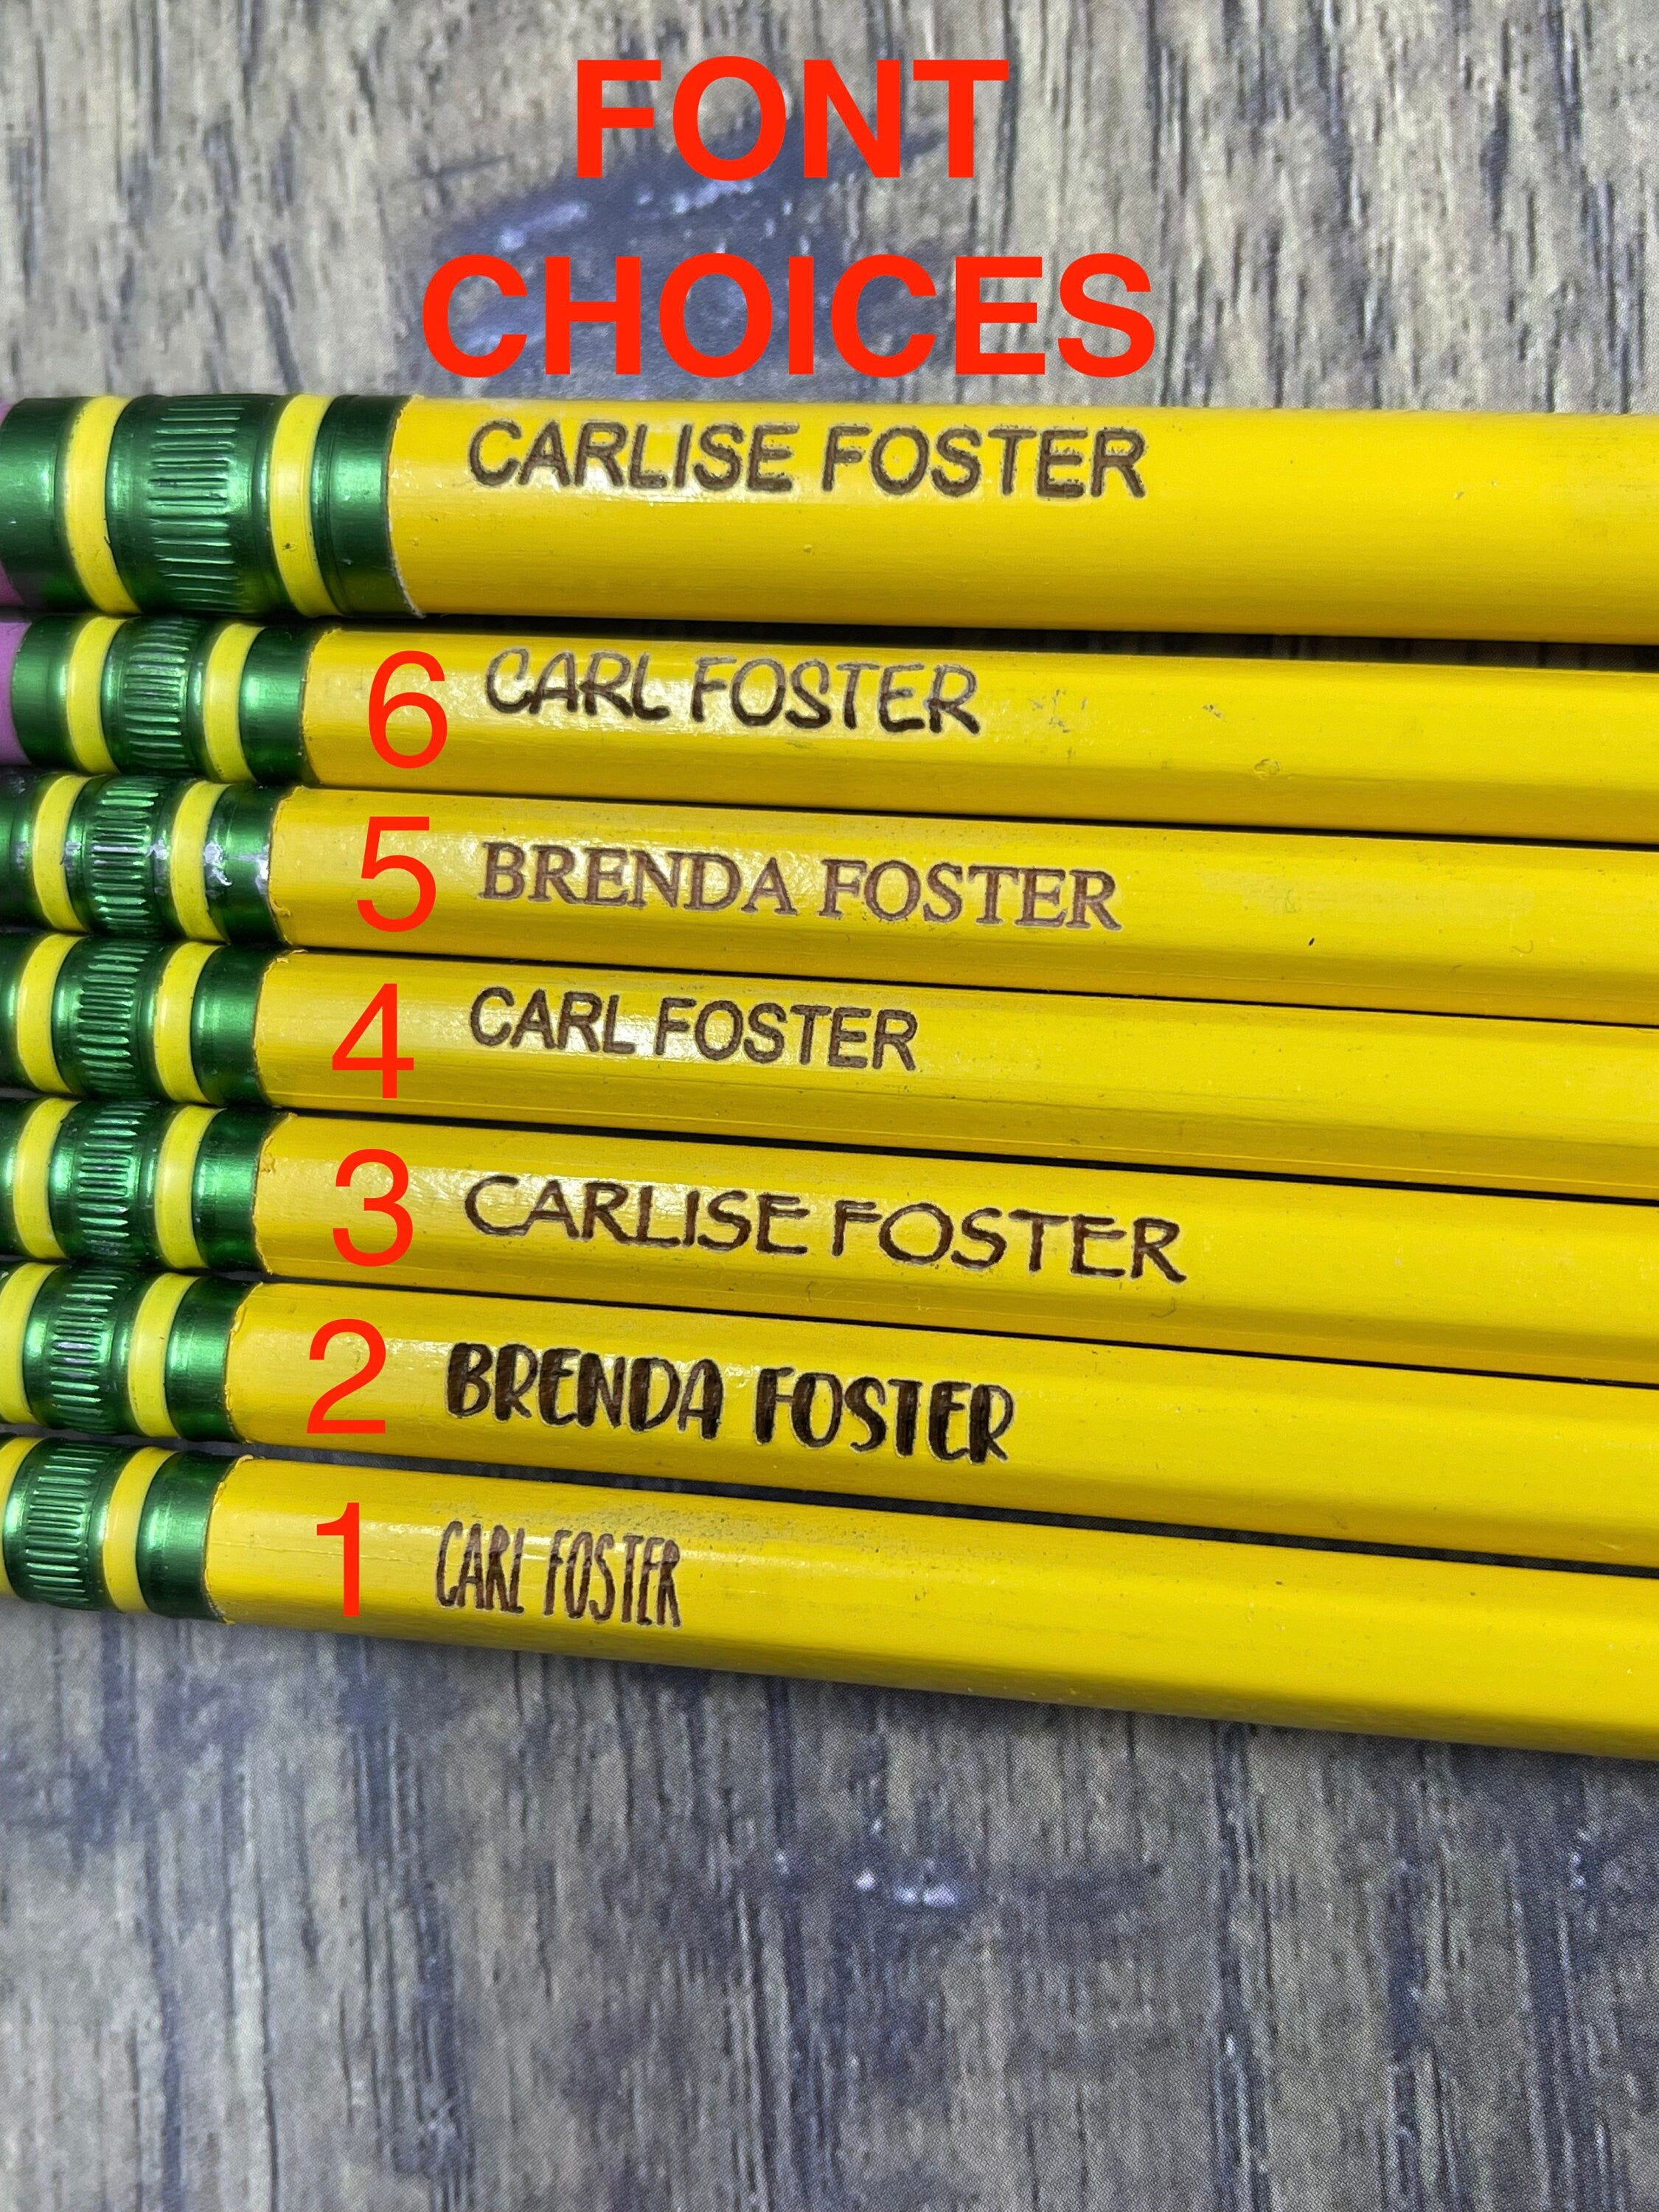 Personalized #2 pencils, Noir pencils, Ticonderoga engraved